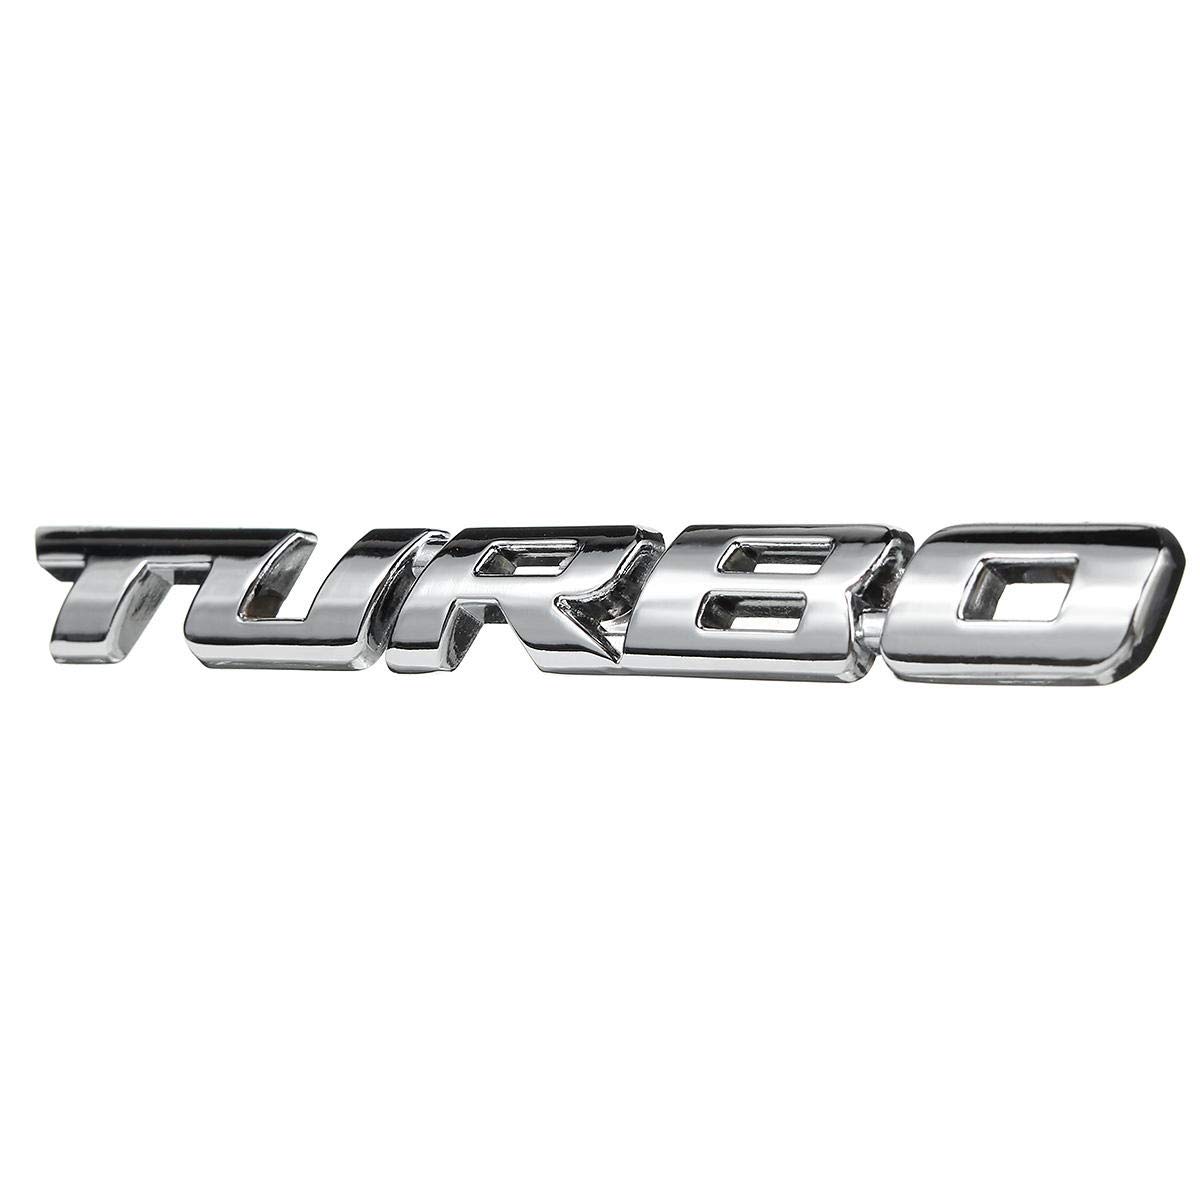 C-Funn Turbo 3D Metall Auto Aufkleber Schriftzug Abzeichen Aufkleber für Auto Body Heckklappe - Silber von C-FUNN